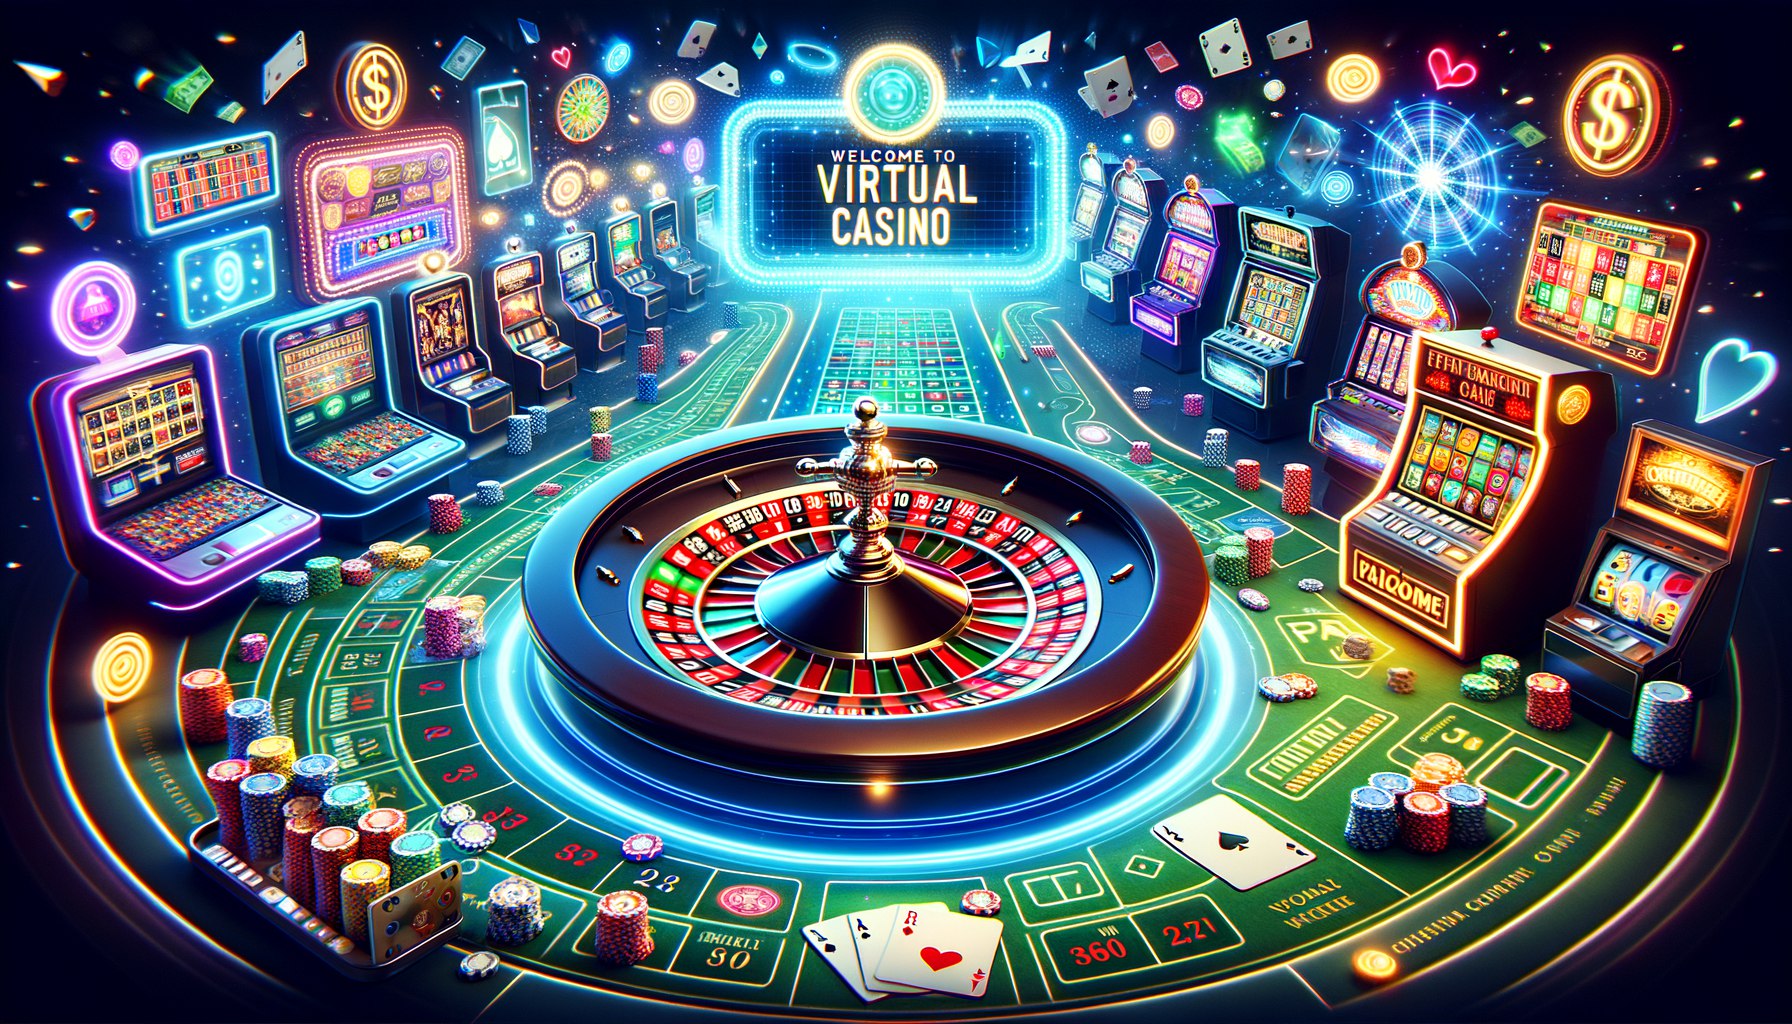 Будущее онлайн-казино - перспективные направления развития, возможности и инновации в игорной индустрии